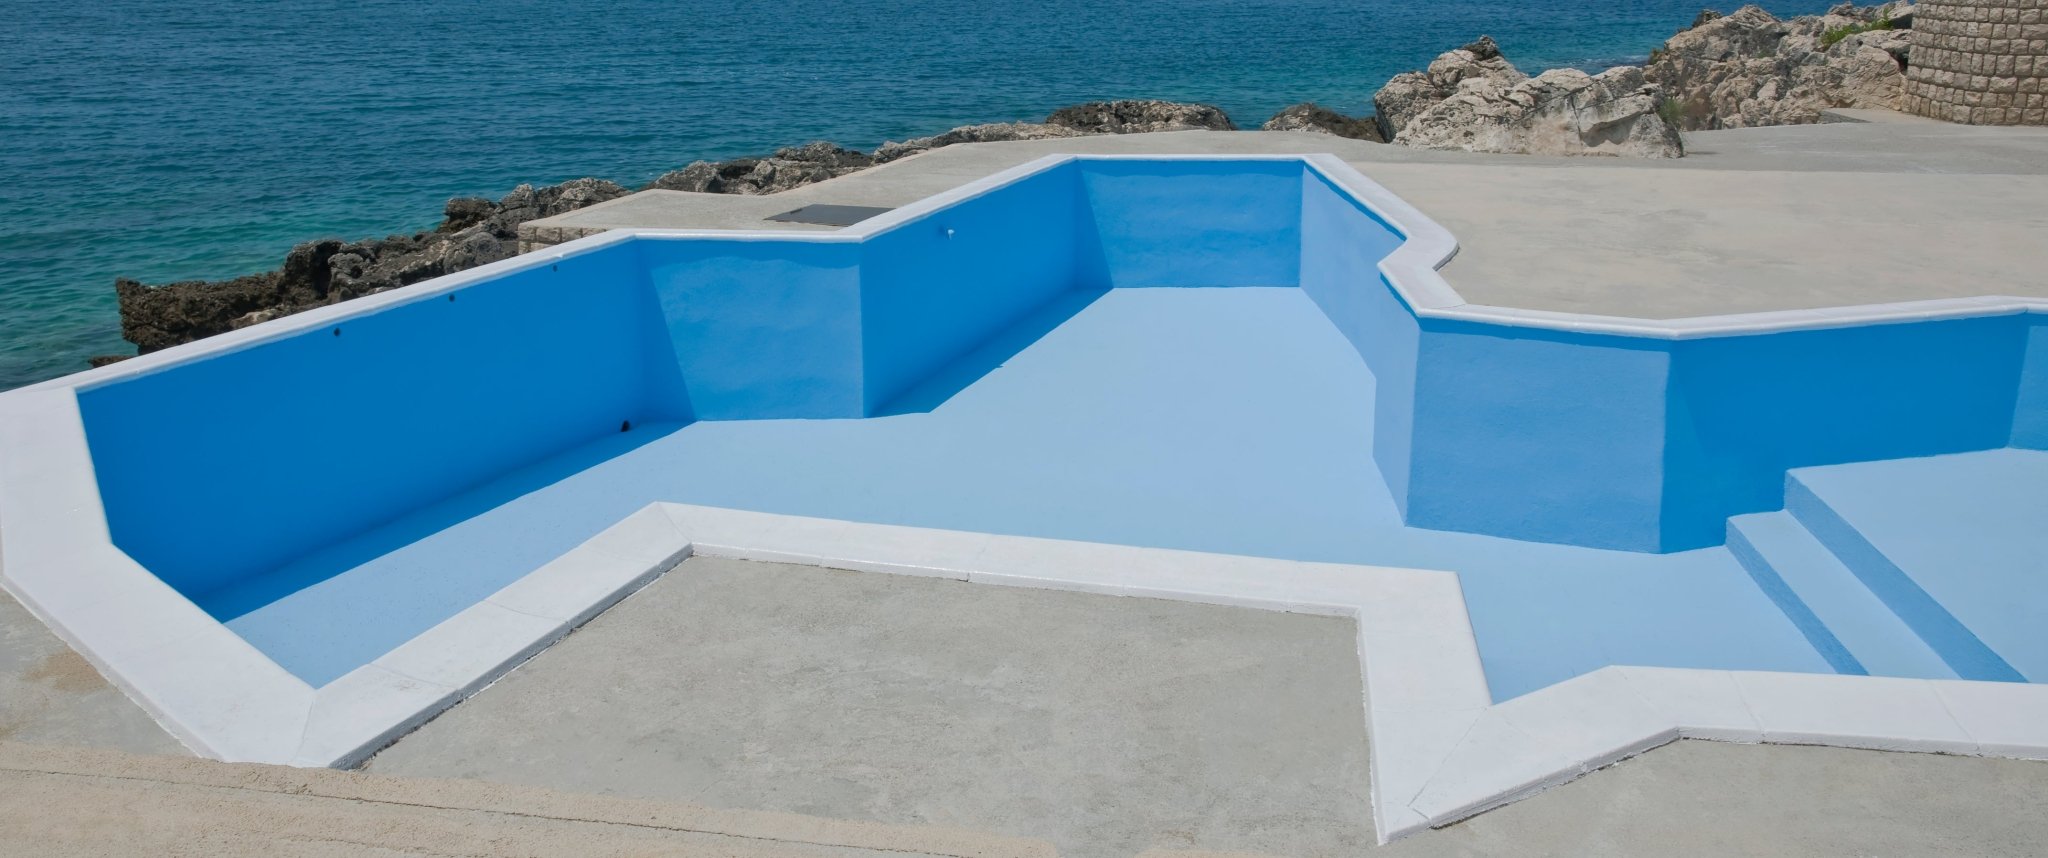 2K Dichtschlämme Schwimmbad Pool Außenbereich Betonbecken abdichten Bodenbeschichtung Grau SL430 5-20Kg